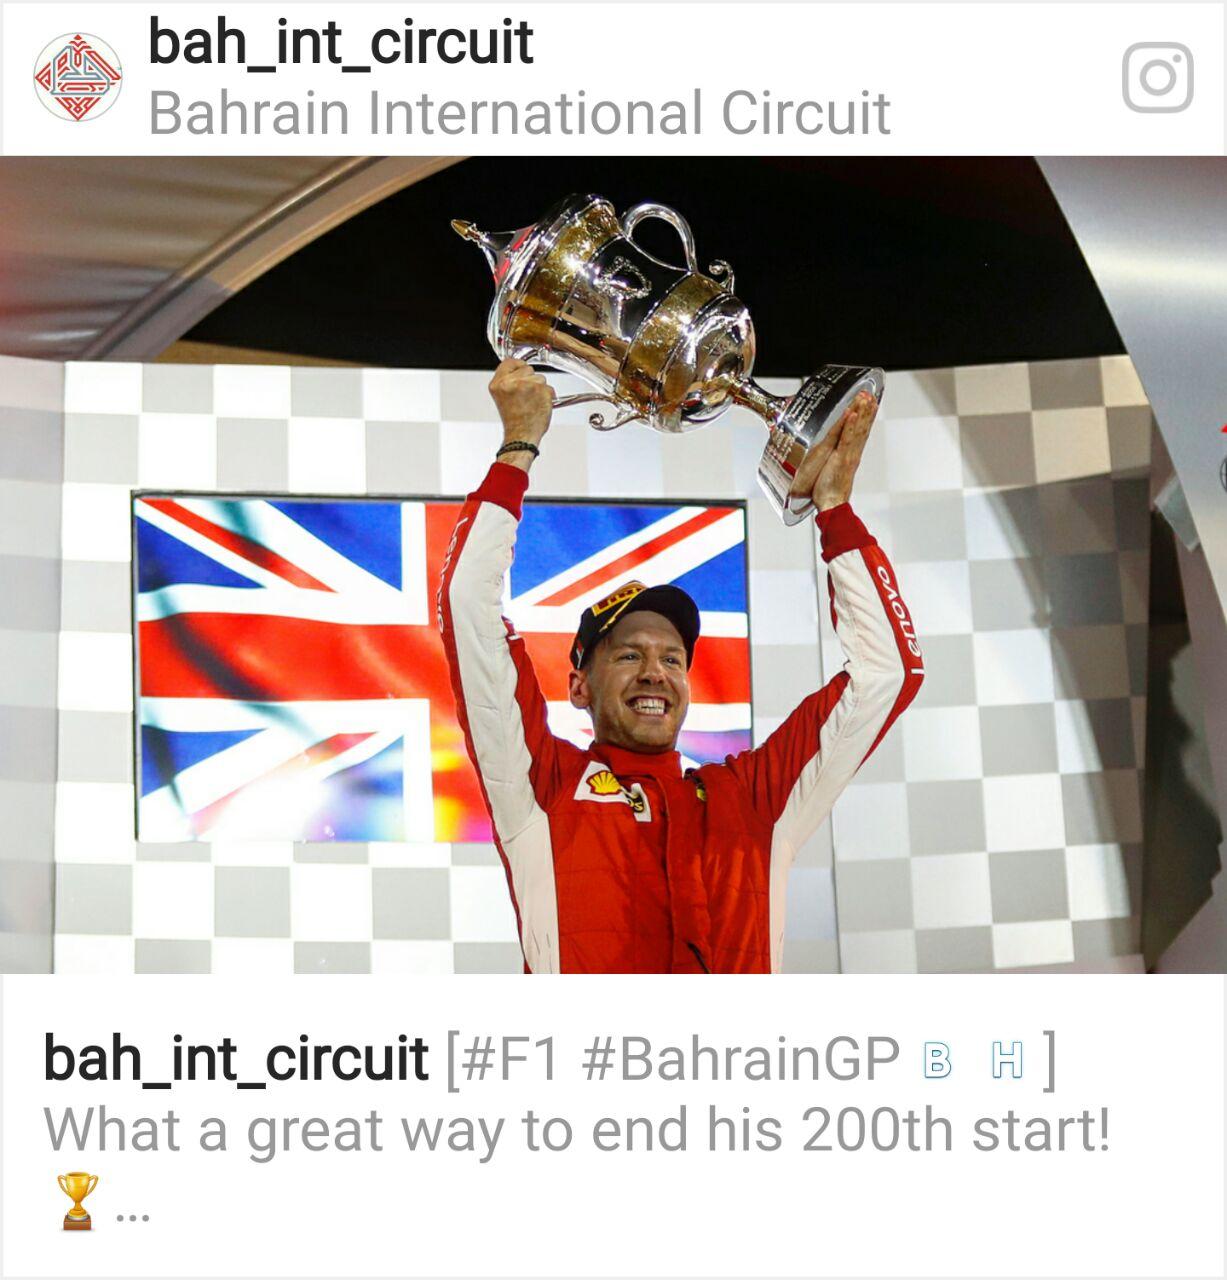 الألماني فيتيل يخطف فوزه الثاني لهذا الموسم بجائزة البحرين الكبري2018